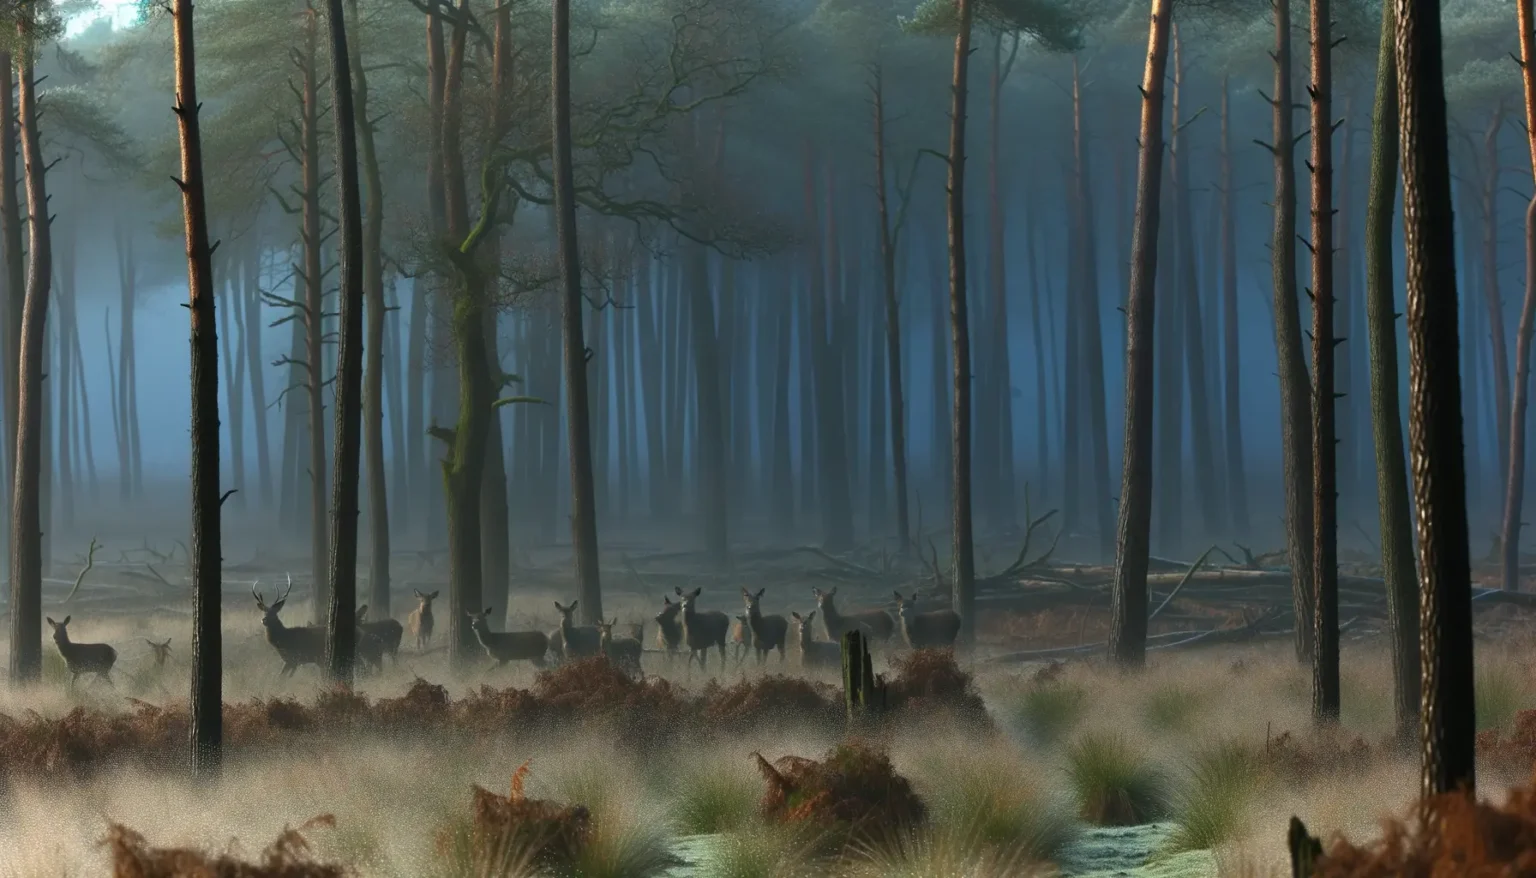 Eine Herde von Hirschen steht in einem nebeligen Wald, umgeben von hohen, schlanken Bäumen und einem Boden, der mit bräunlichem Unterholz und grünen Pflanzen bedeckt ist, während die Morgensonne sanft durch den Nebel strahlt.